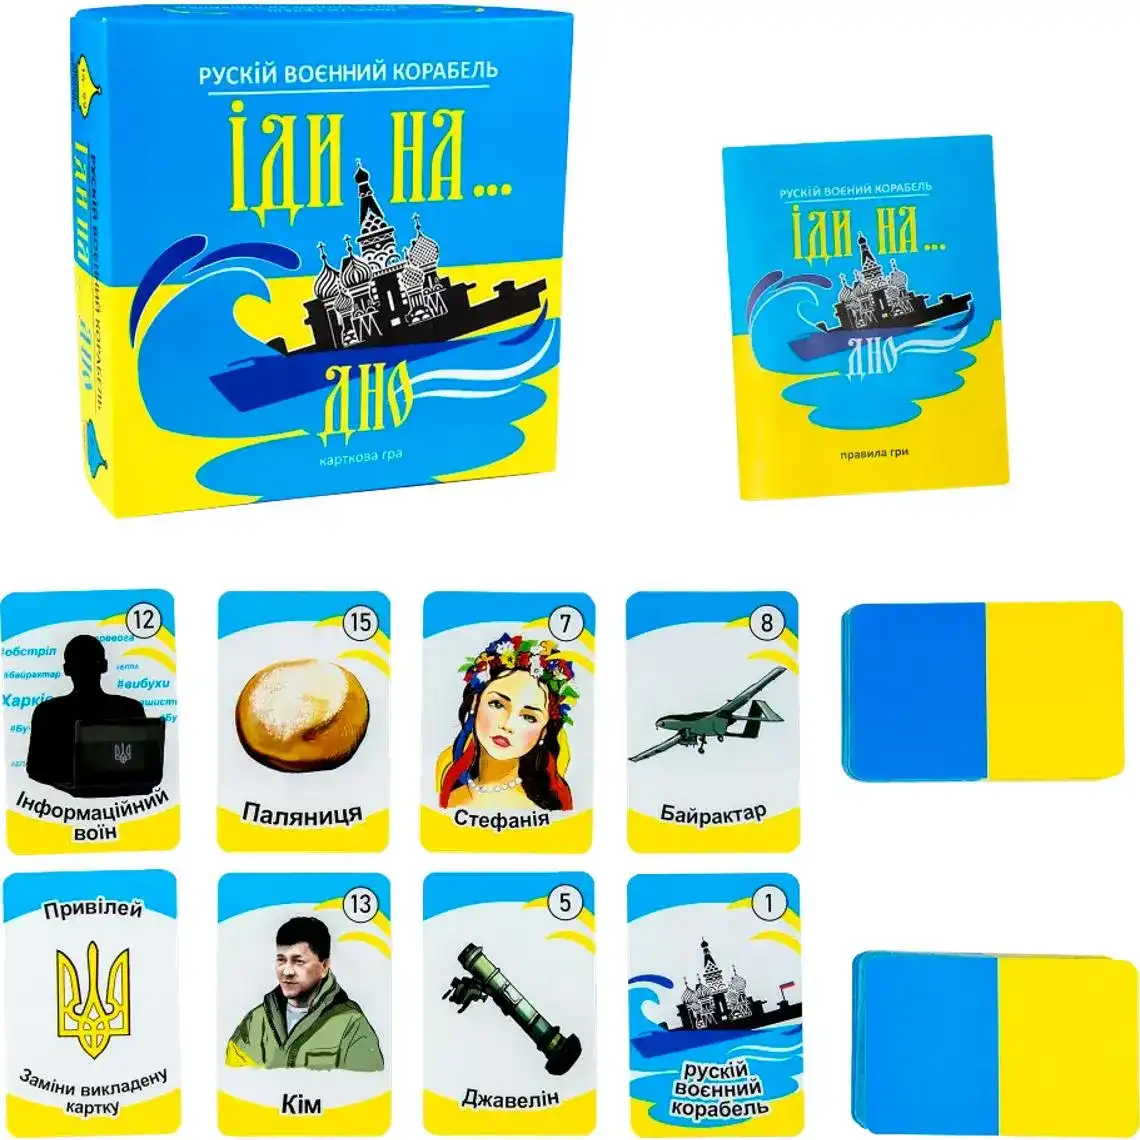 Настільна гра Strateg "Рускій воєнний корабль, іди на... дно" карткова жовто-блакитна